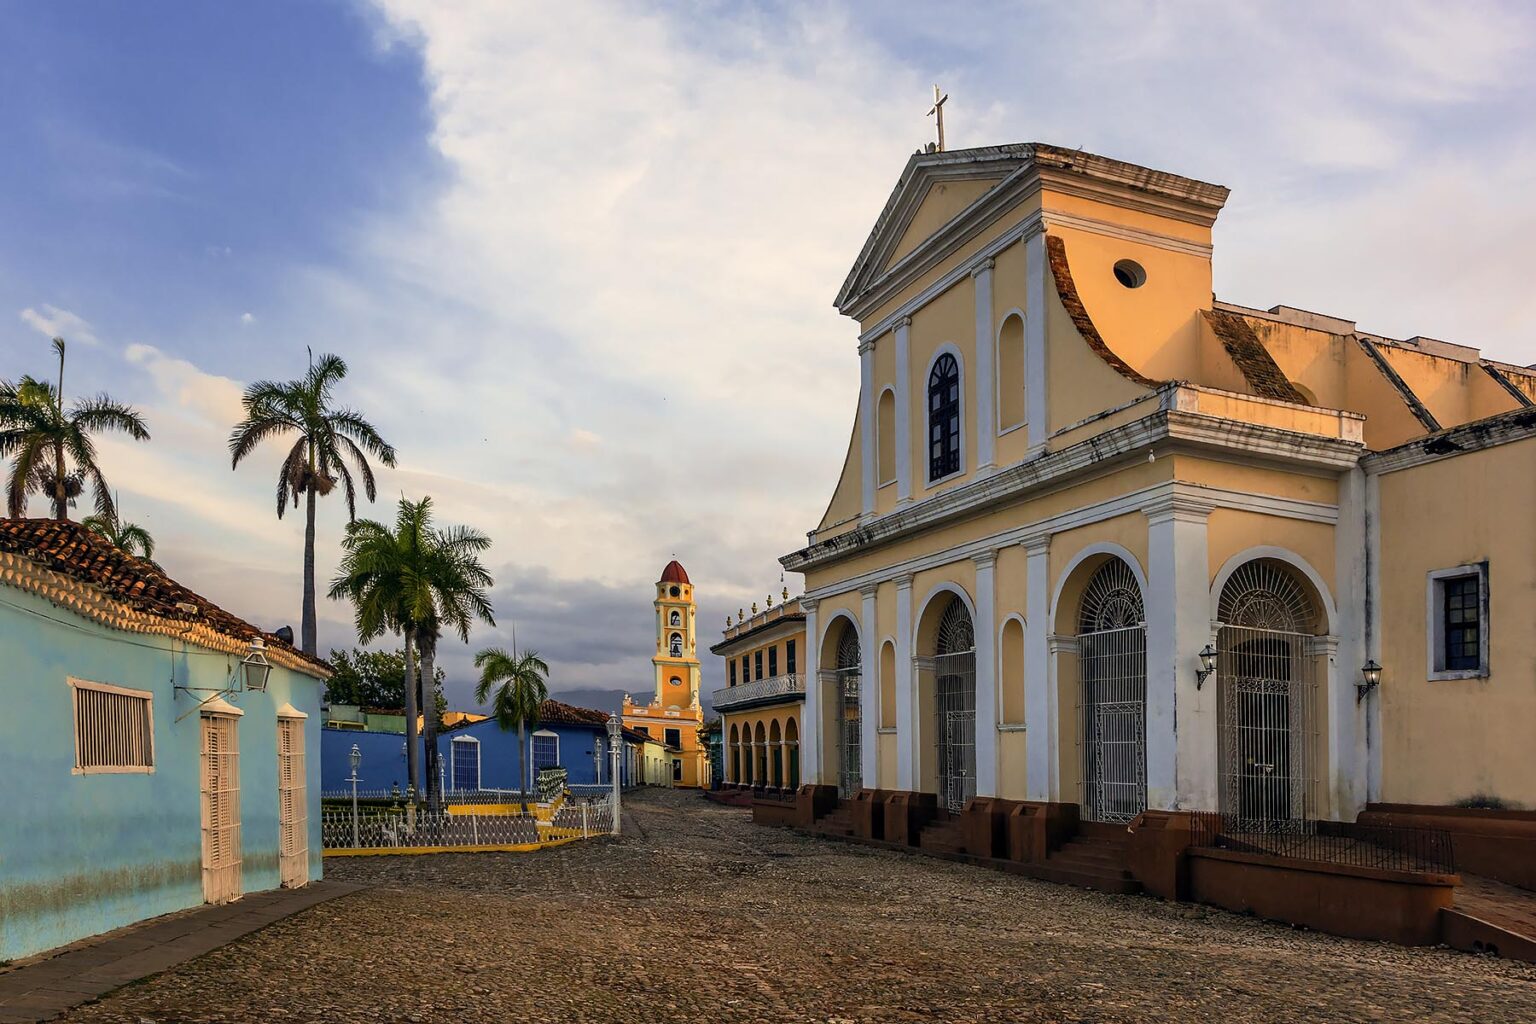 The IGLESIA PARROQUIAL DE LA SANTISIMA TRINIDAD is located on PLAZA MAYOR - TRINIDAD, CUBA